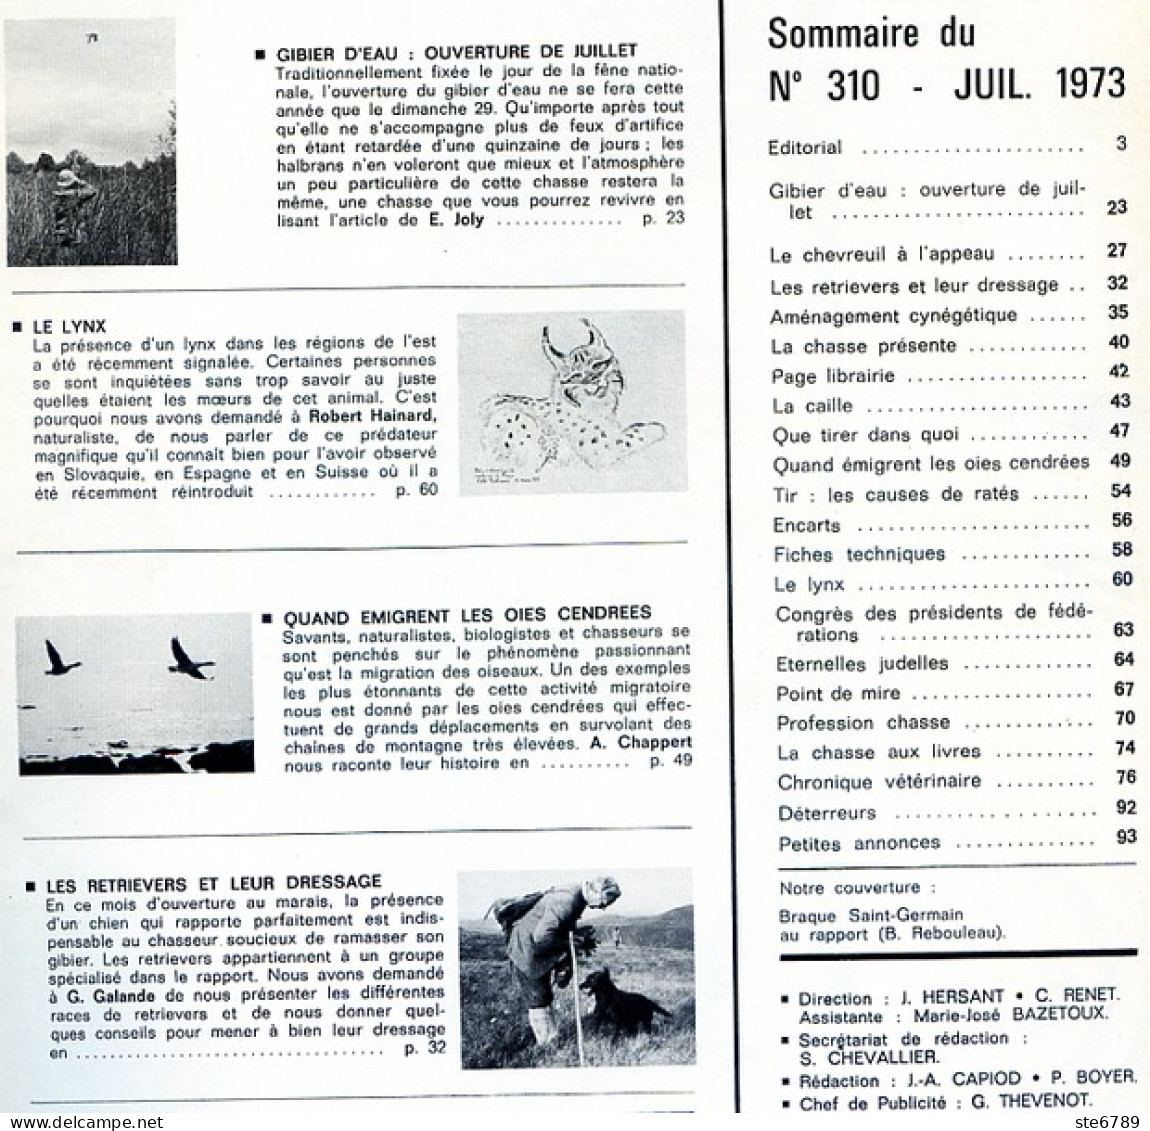 La Revue Nationale De LA CHASSE N° 310 Juillet 1973 Le Lynx , Gibier D'eau , Oies Cendrées , Chiens Retrievers - Chasse & Pêche